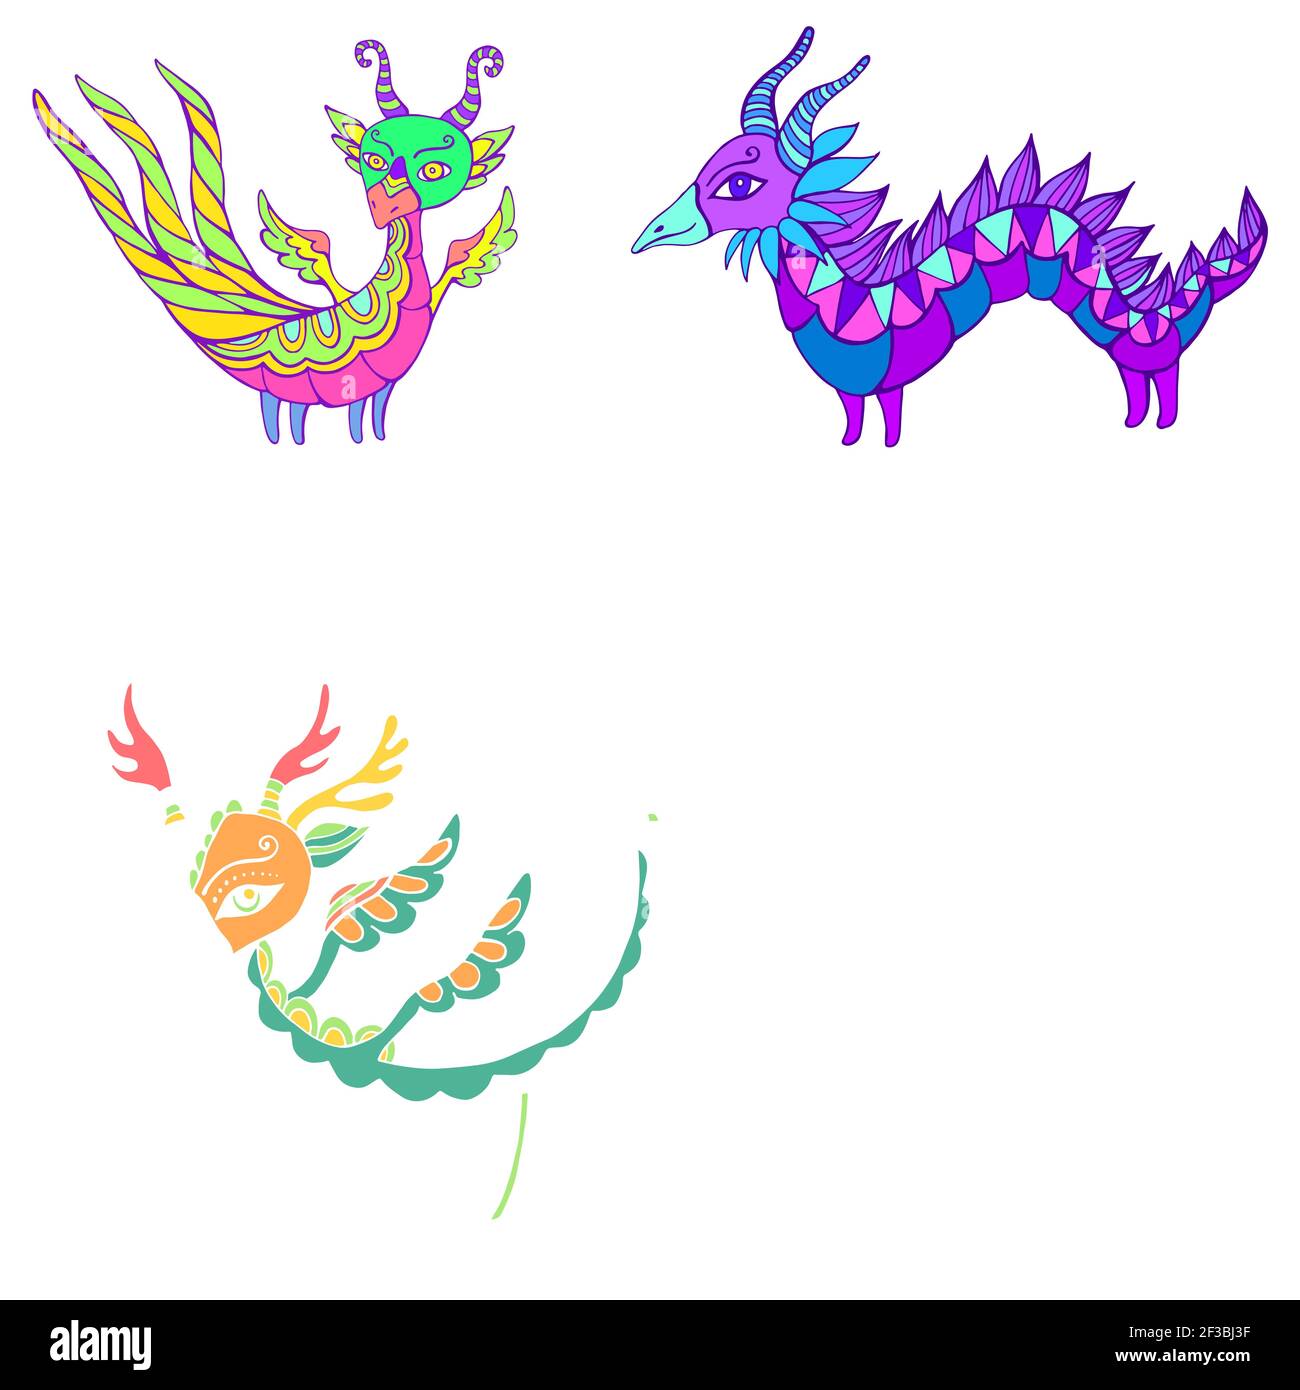 Ensemble de cinq dragons fantaisie colorés. Chaque dragon est unique, avec ses couleurs et ses motifs, ses ailes, ses cornes et ses queues. Isolé sur blanc. Déco bizarre Illustration de Vecteur